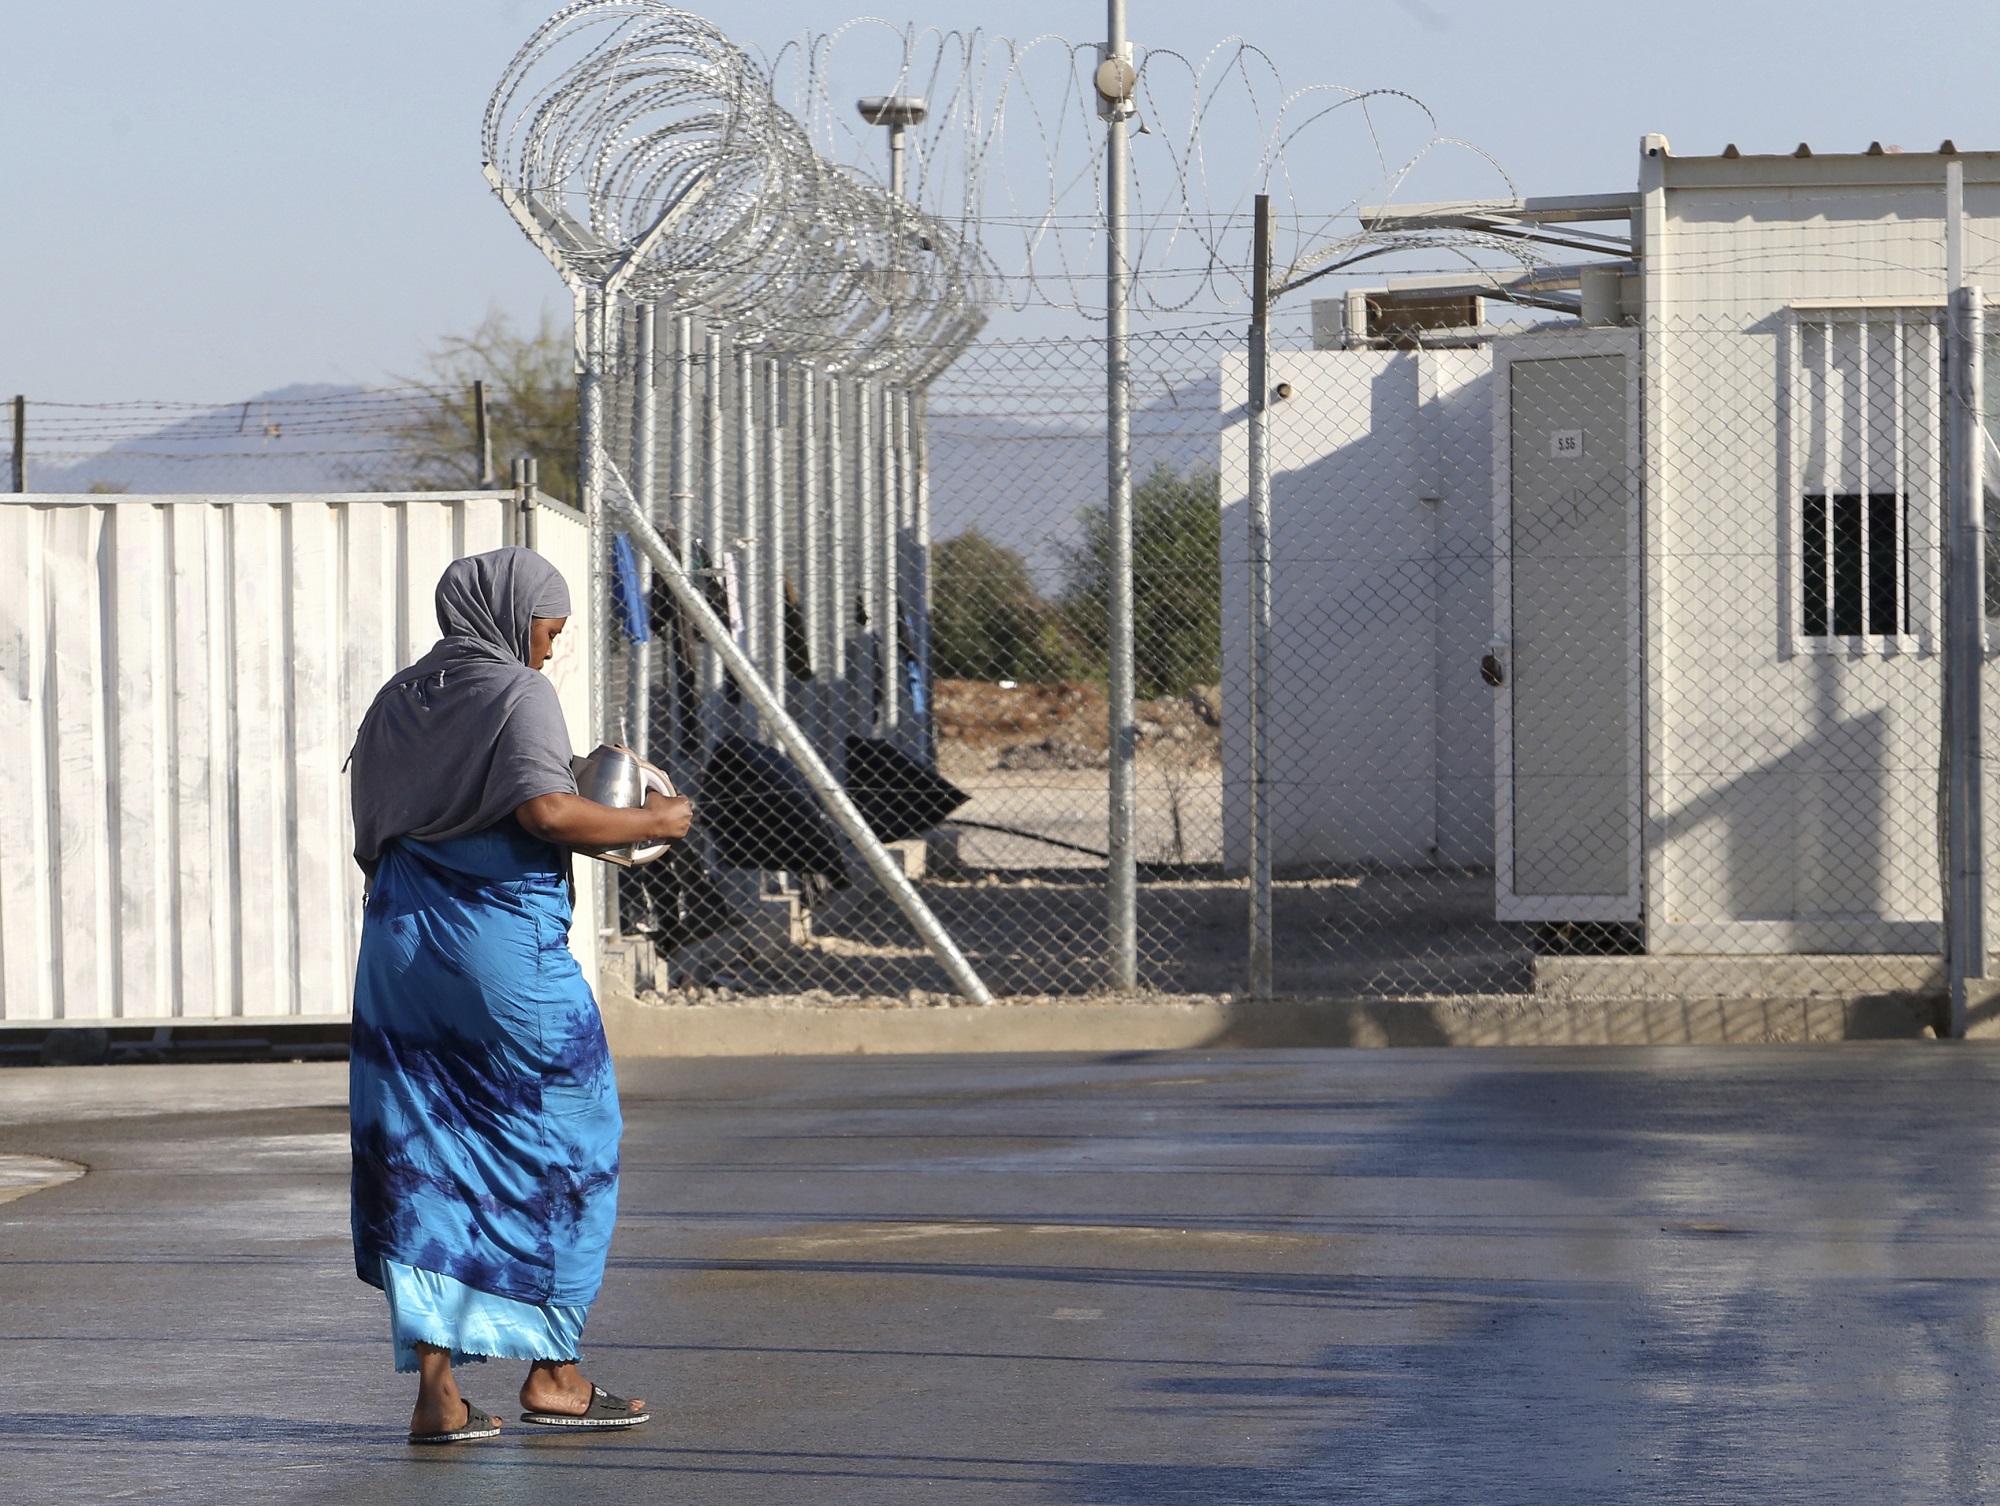 Κύπρος: Στη Μάλτα για το Συνέδριο της Ευρωπαϊκής Υπηρεσίας Υποστήριξης Ασύλου ο υπ. Εσωτερικών Νίκος Νουρής